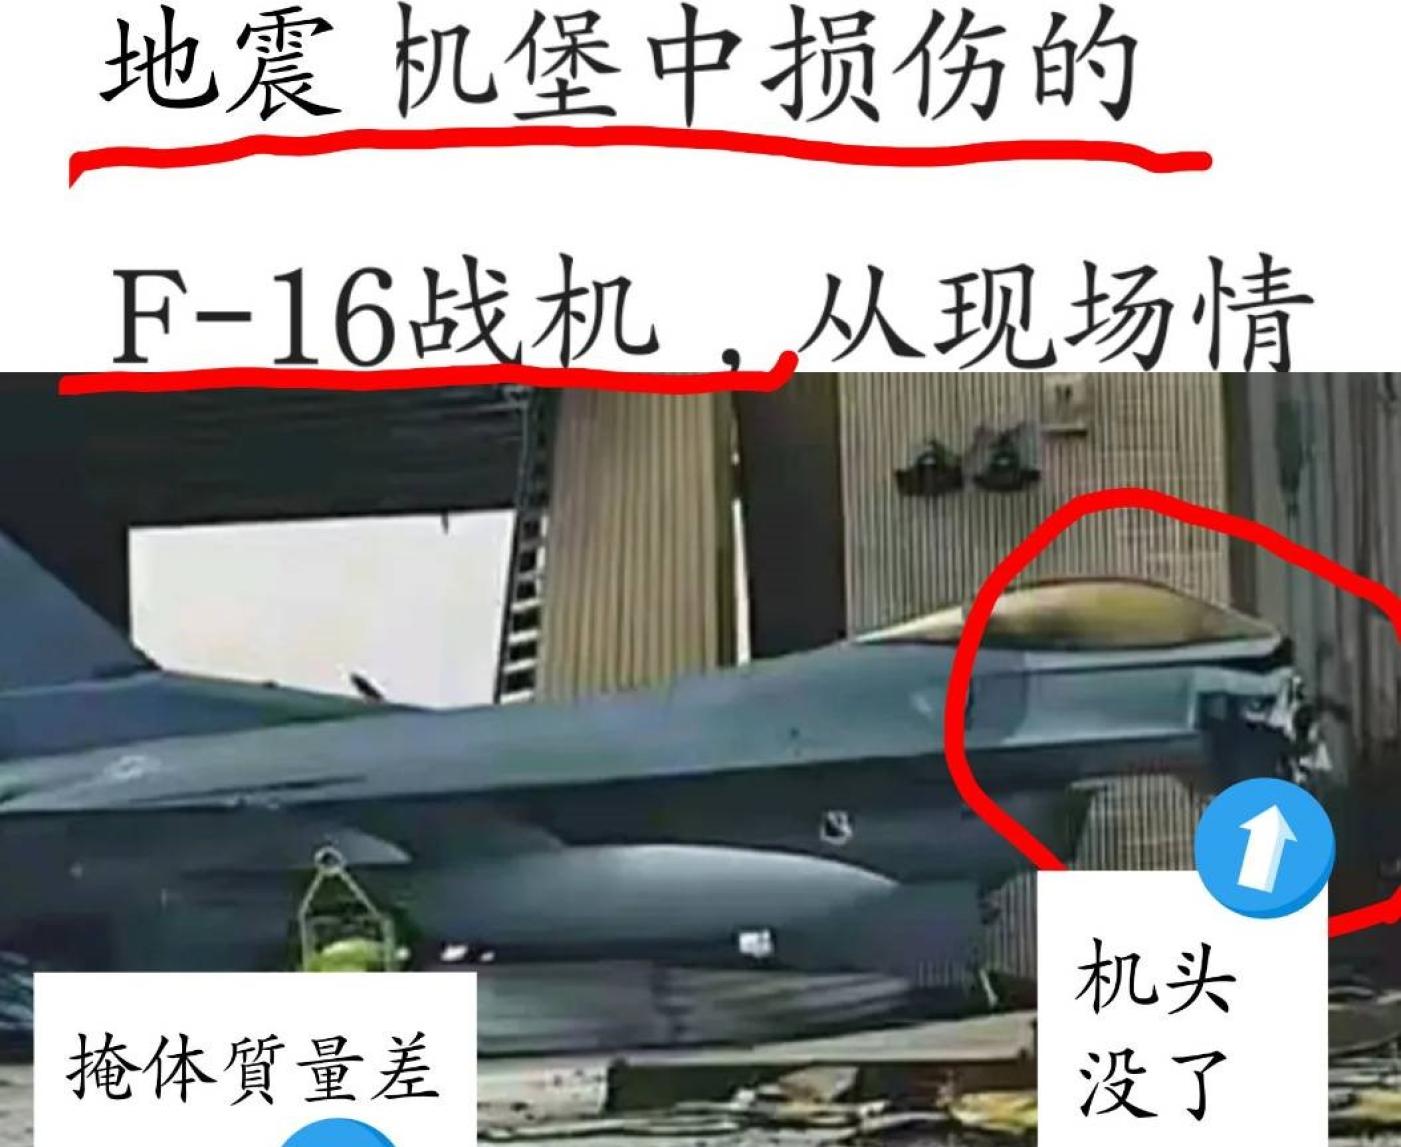 中國網軍發布花蓮大地震指我戰機受損嚴重，遭空軍駁斥。翻攝網路